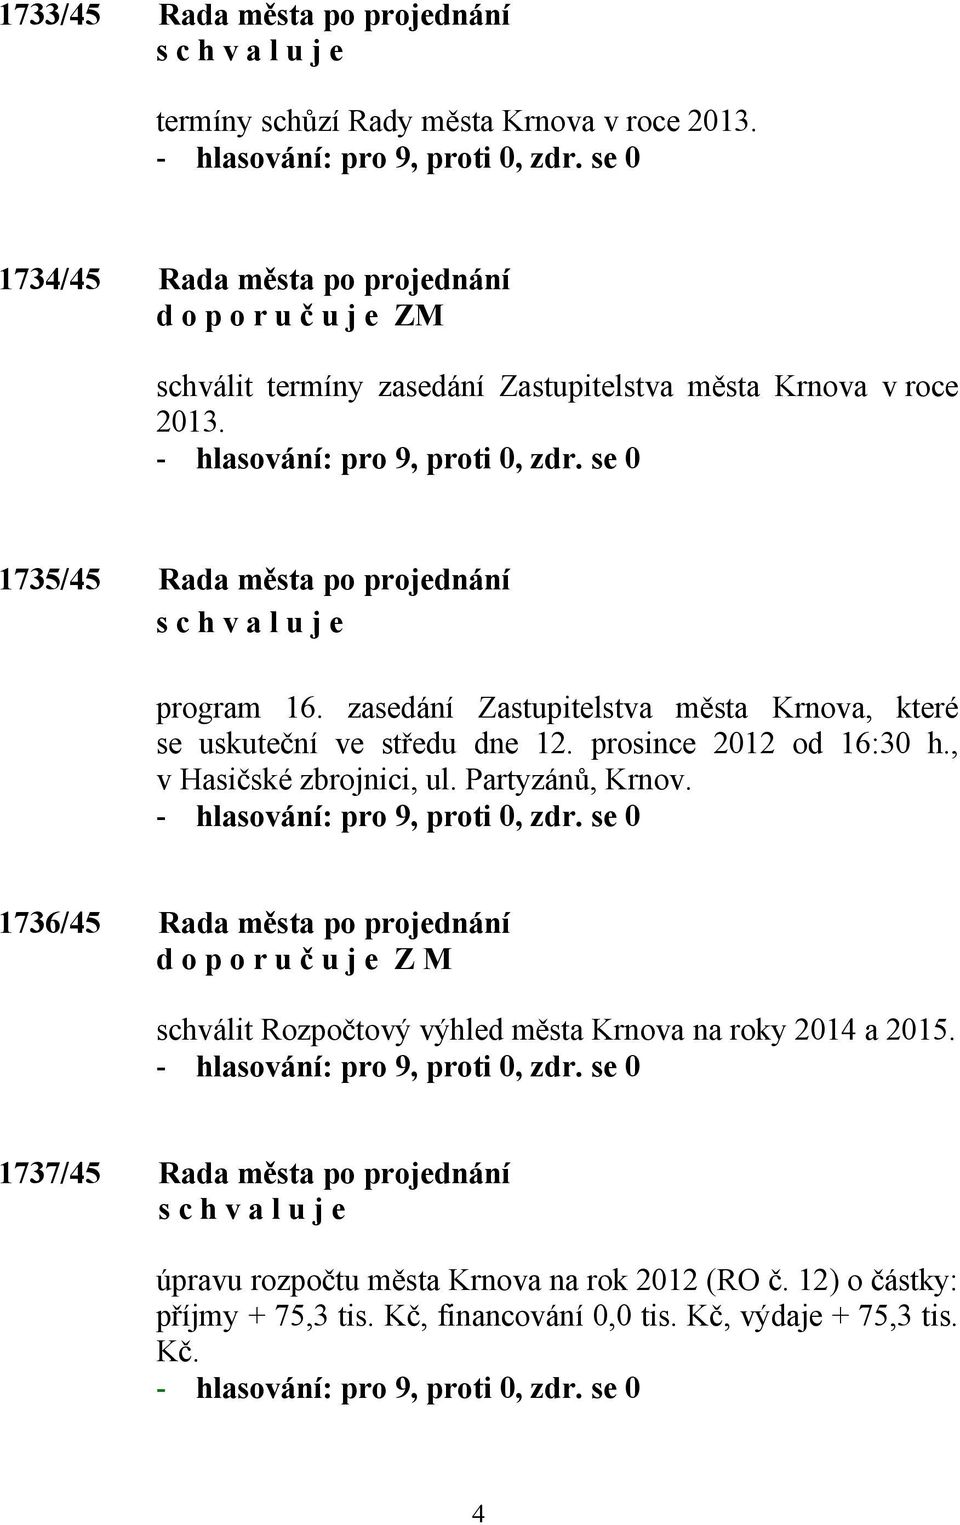 zasedání Zastupitelstva města Krnova, které se uskuteční ve středu dne 12. prosince 2012 od 16:30 h., v Hasičské zbrojnici, ul. Partyzánů, Krnov.